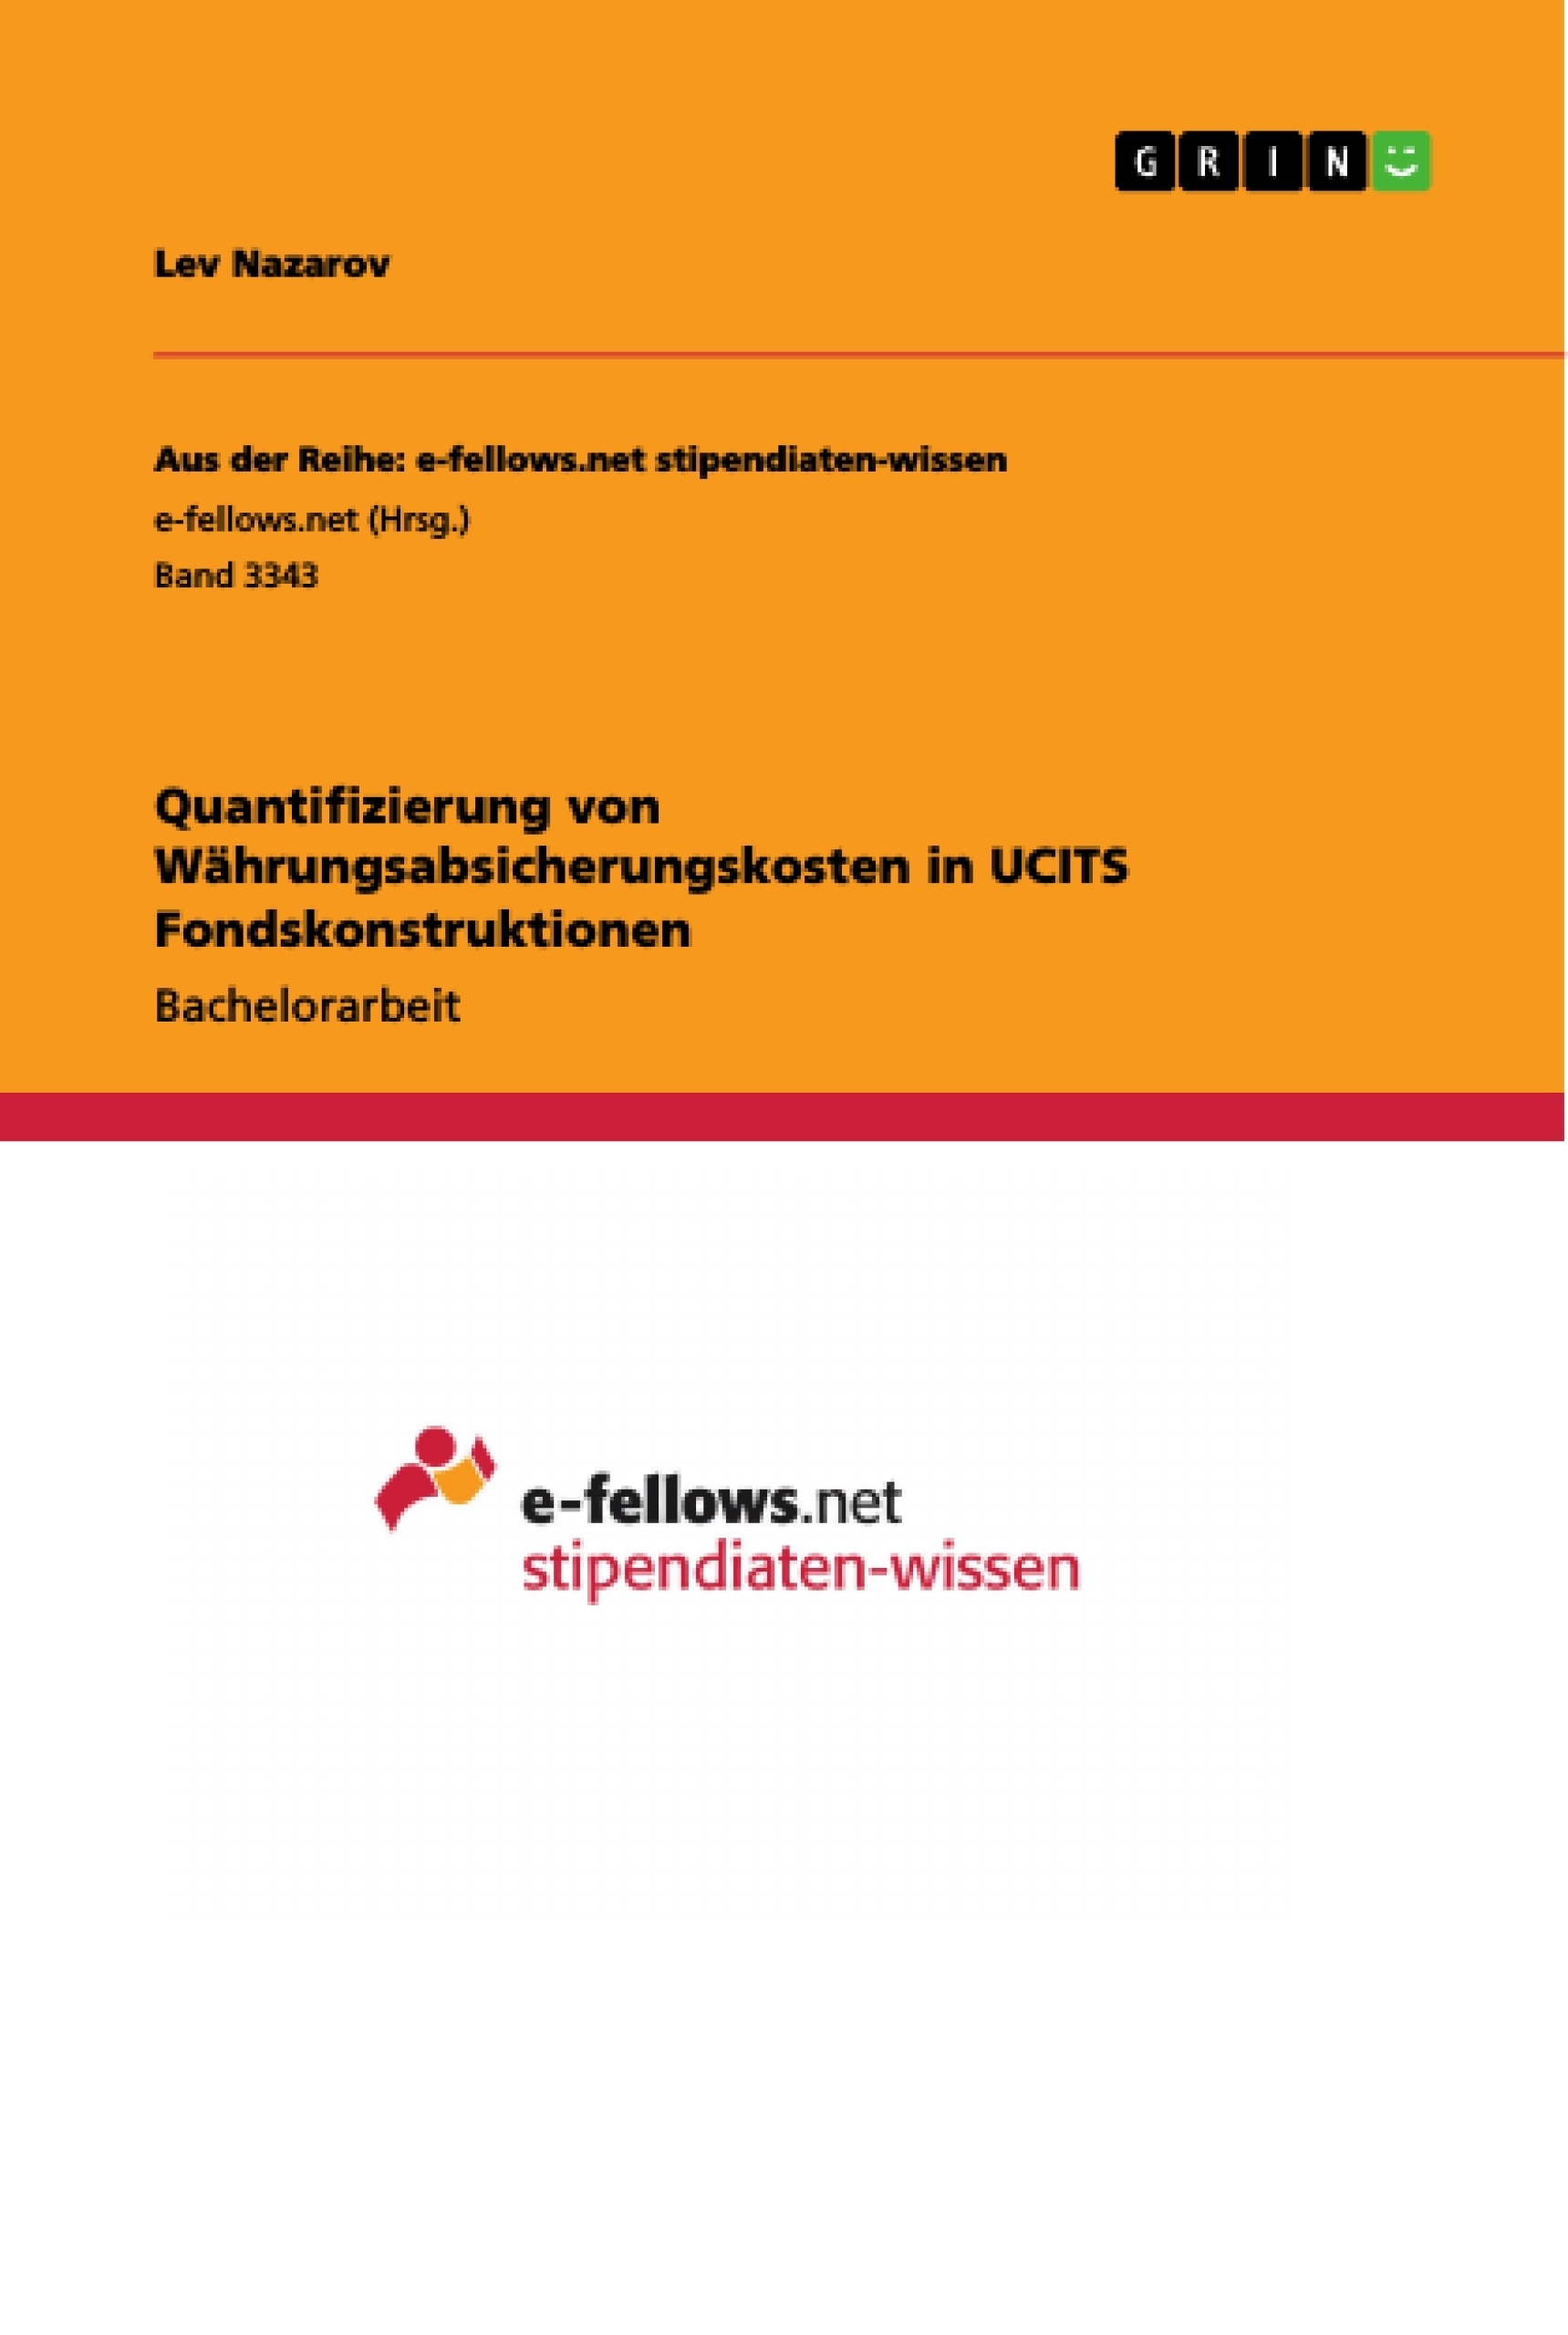 Title: Quantifizierung von Währungsabsicherungskosten in UCITS Fondskonstruktionen